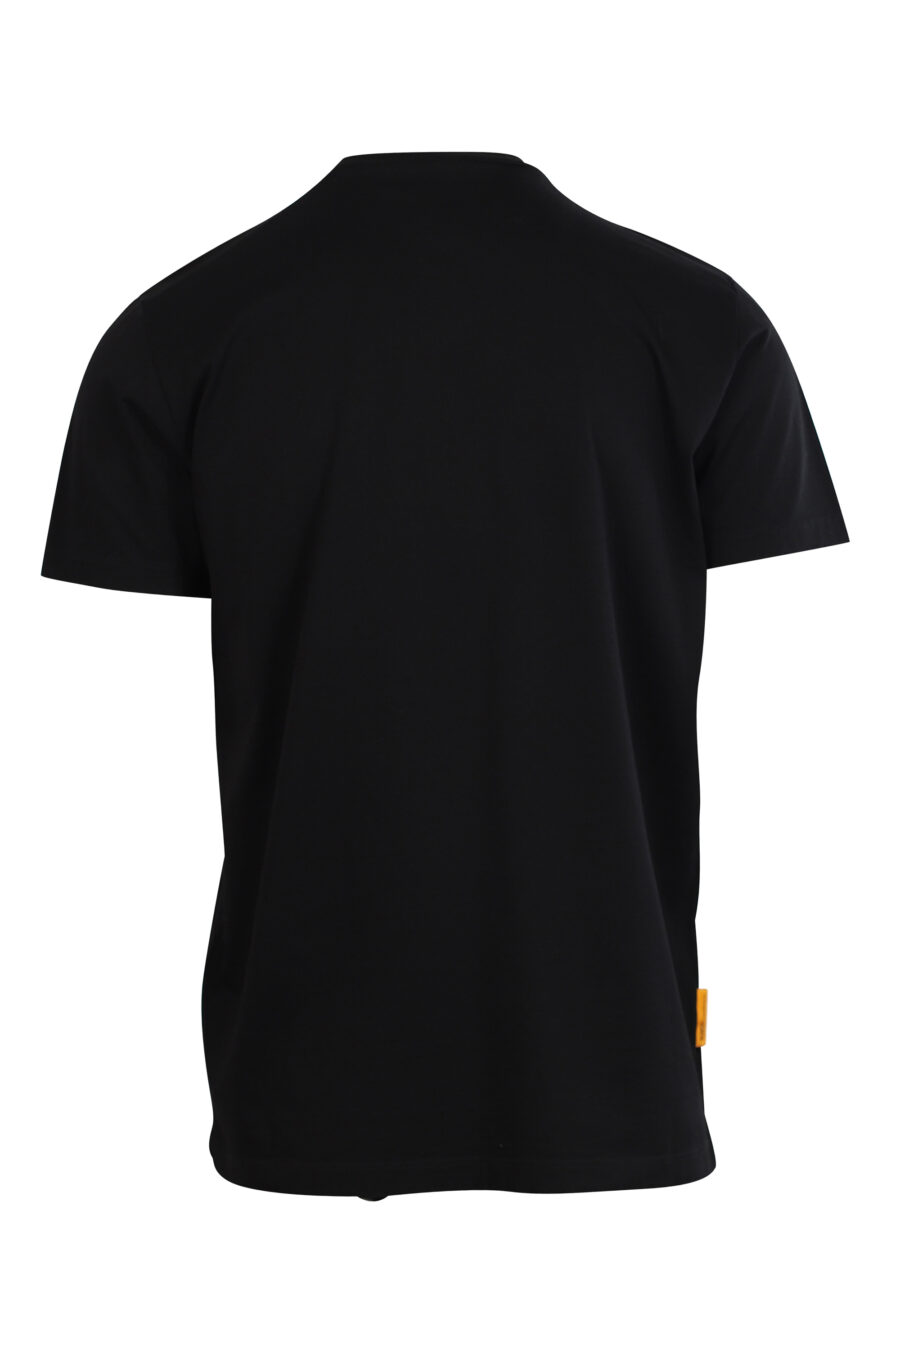 T-shirt noir avec maxilogo "pac-man" - 8054148177485 2